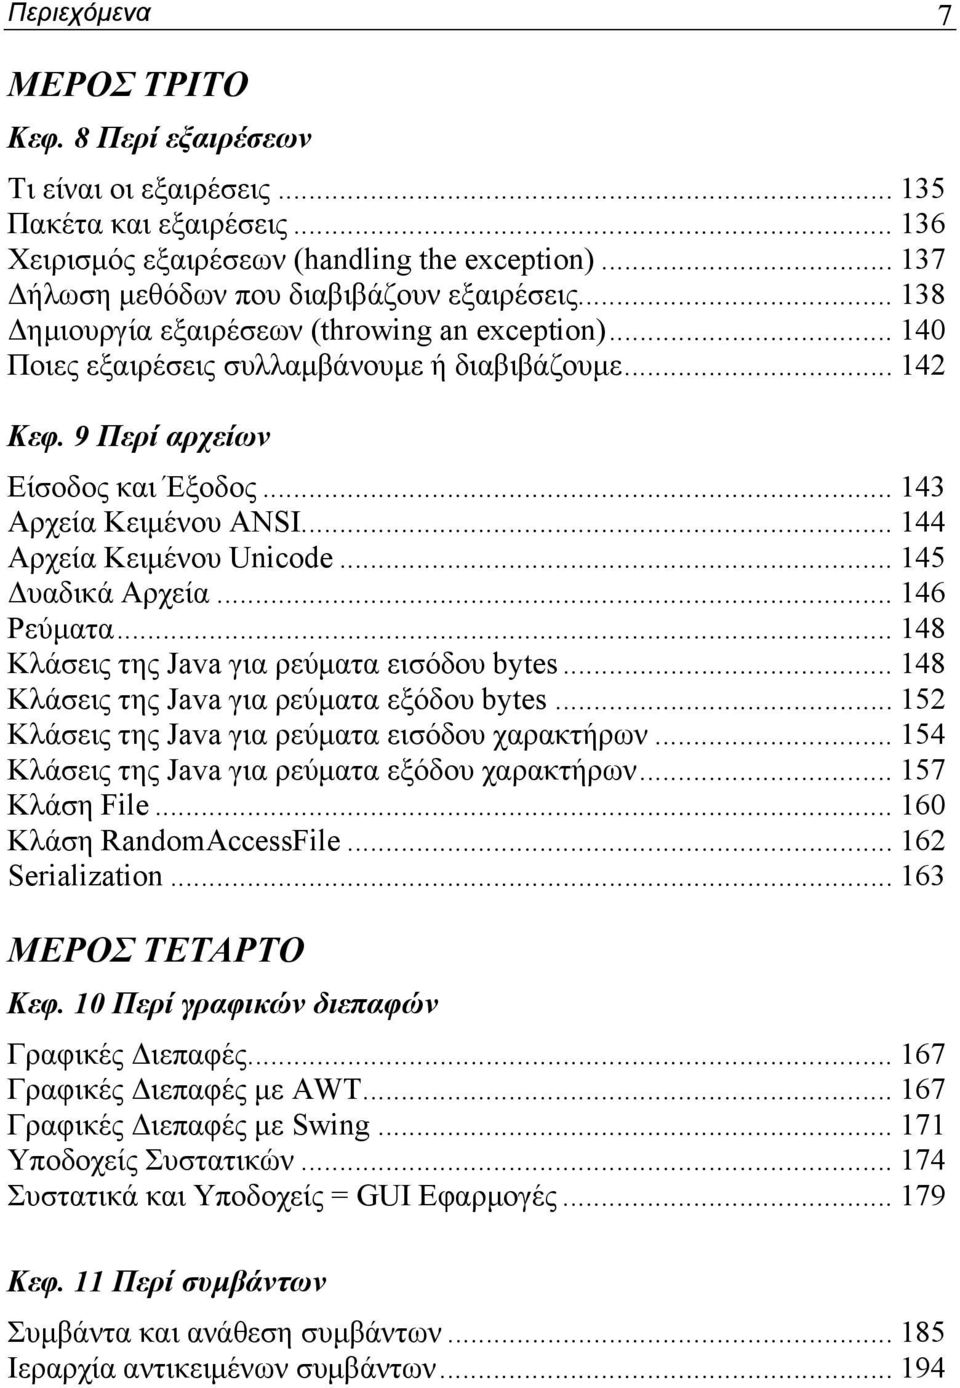 9 Περί αρχείων Είσοδος και Έξοδος... 143 Αρχεία Κειμένου ANSI... 144 Αρχεία Κειμένου Unicode... 145 Δυαδικά Αρχεία... 146 Ρεύματα... 148 Κλάσεις της Java για ρεύματα εισόδου bytes.